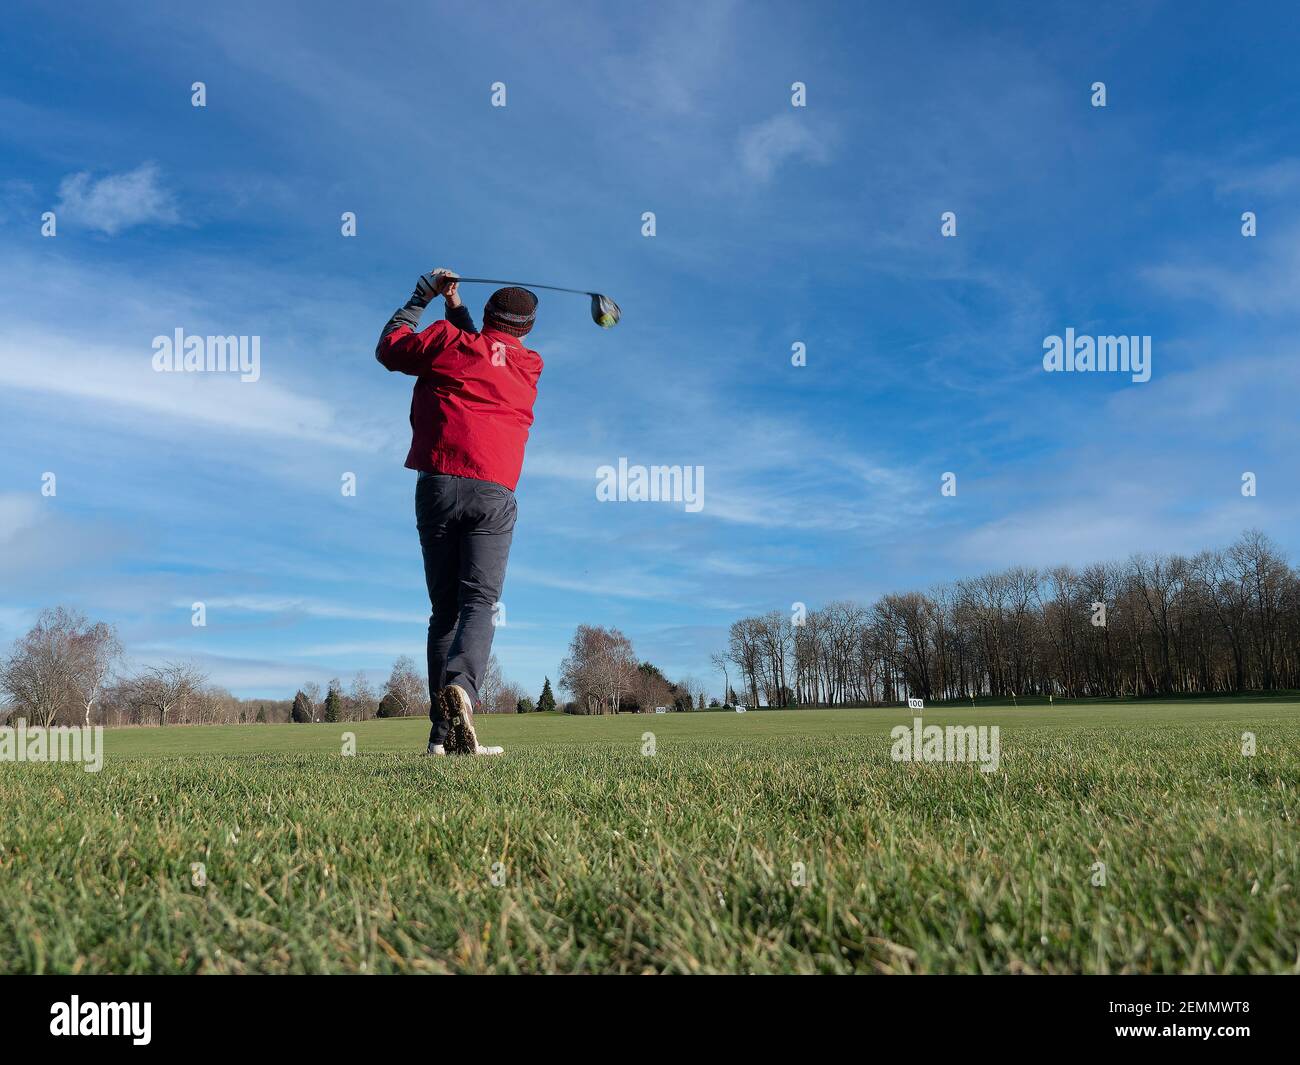 Caen, France, février 2021. Un parcours de golf et un joueur pratiquant un long choc en arrière, de dessous vous pouvez voir l'herbe verte, le ciel bleu Banque D'Images